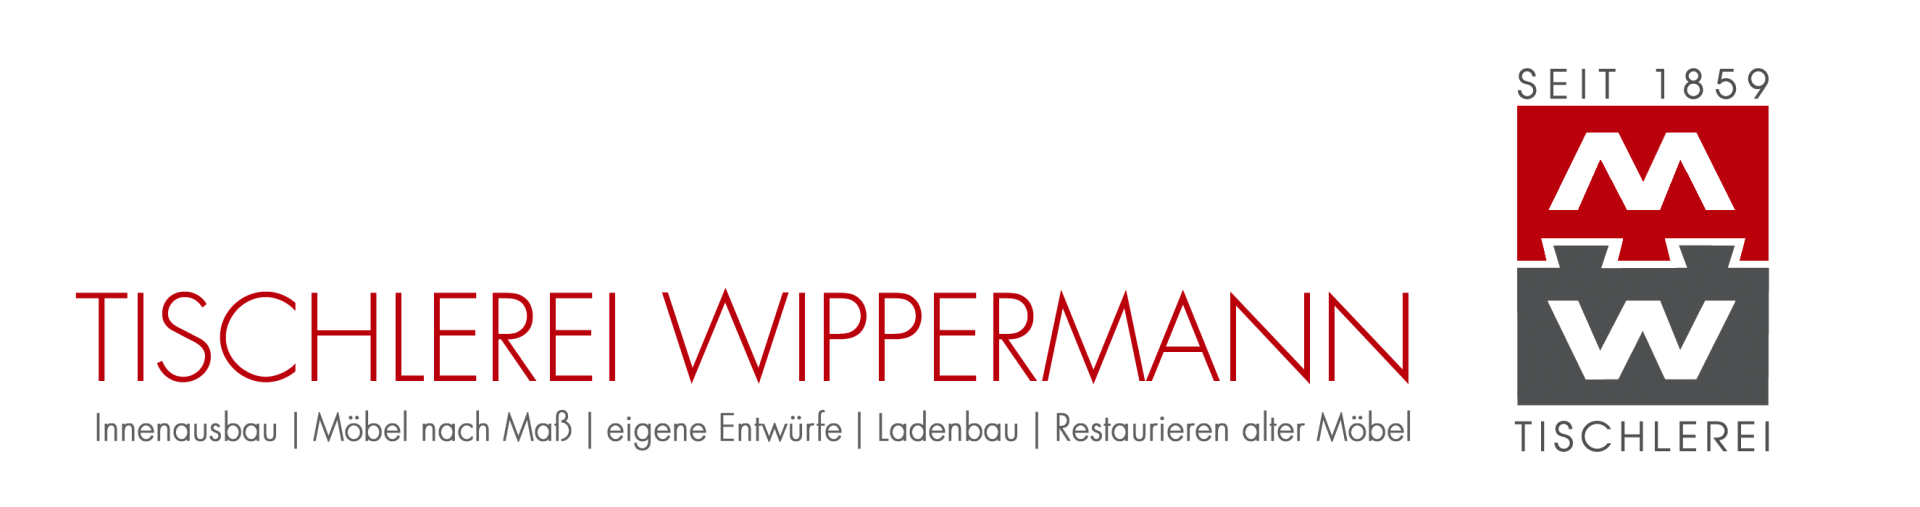 Logo der Tischlerei Wippermann in Paderborn